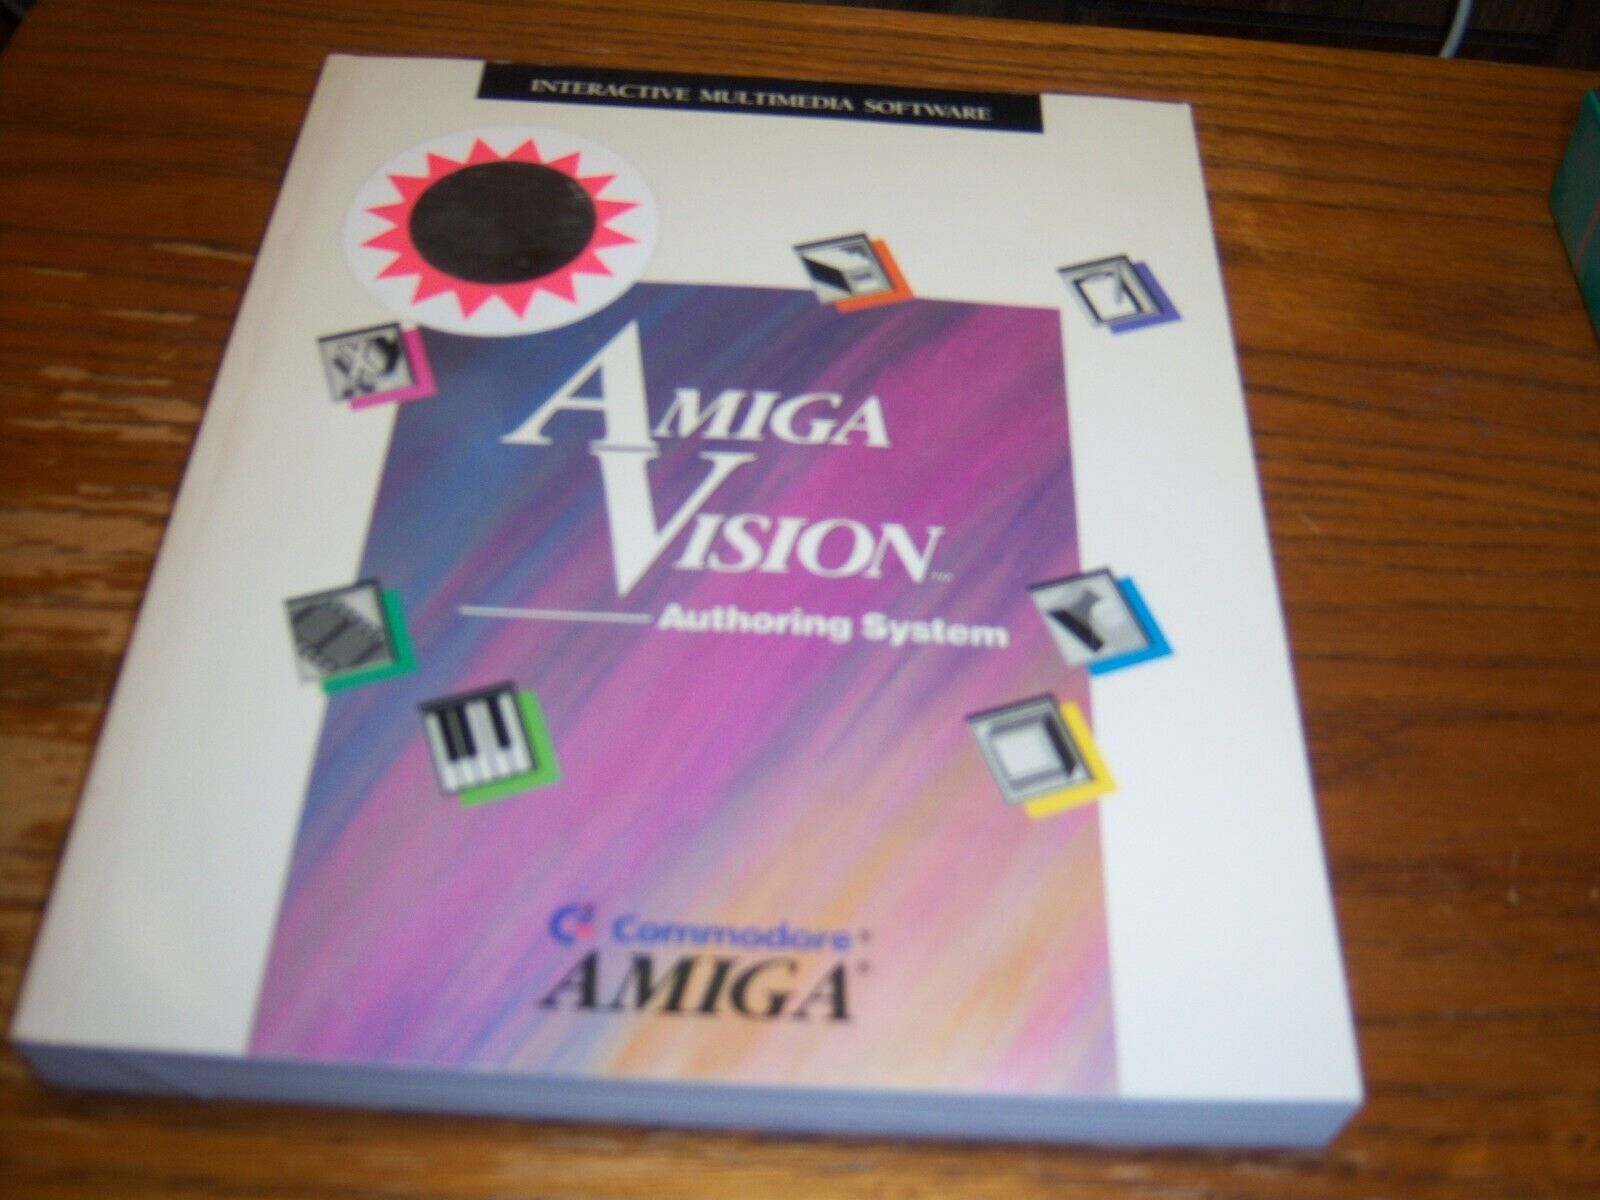 Commodore Amiga Vision Authoring System